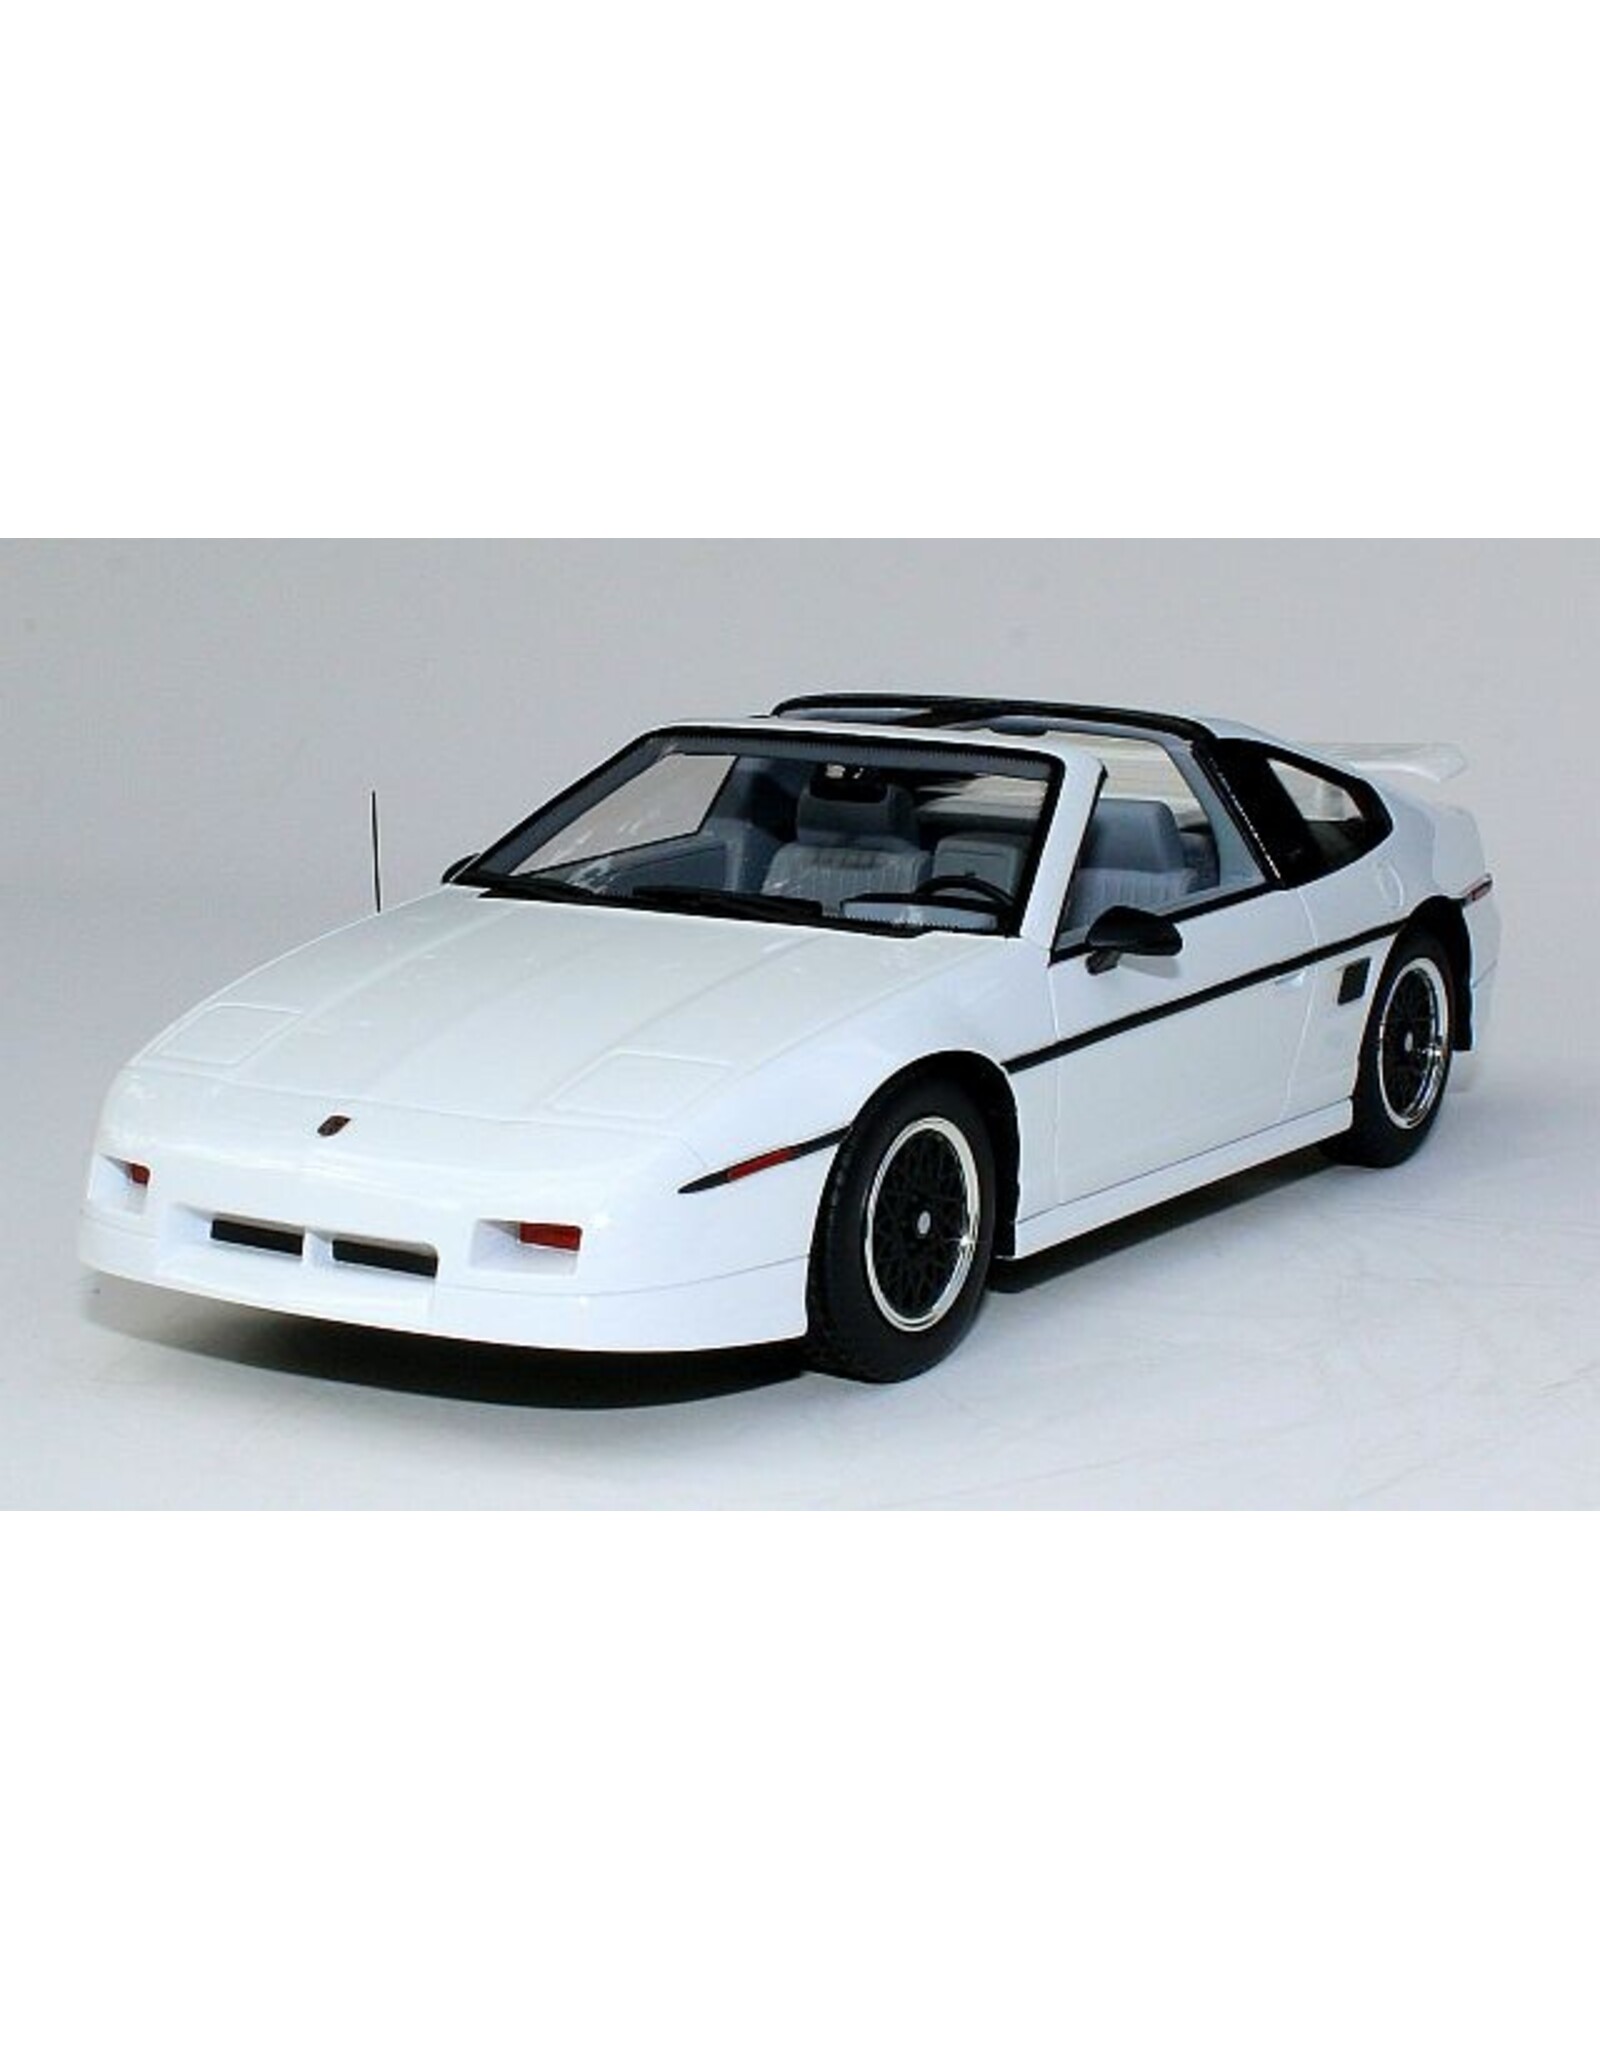 Pontiac Pontiac Fiero GT(1988)white